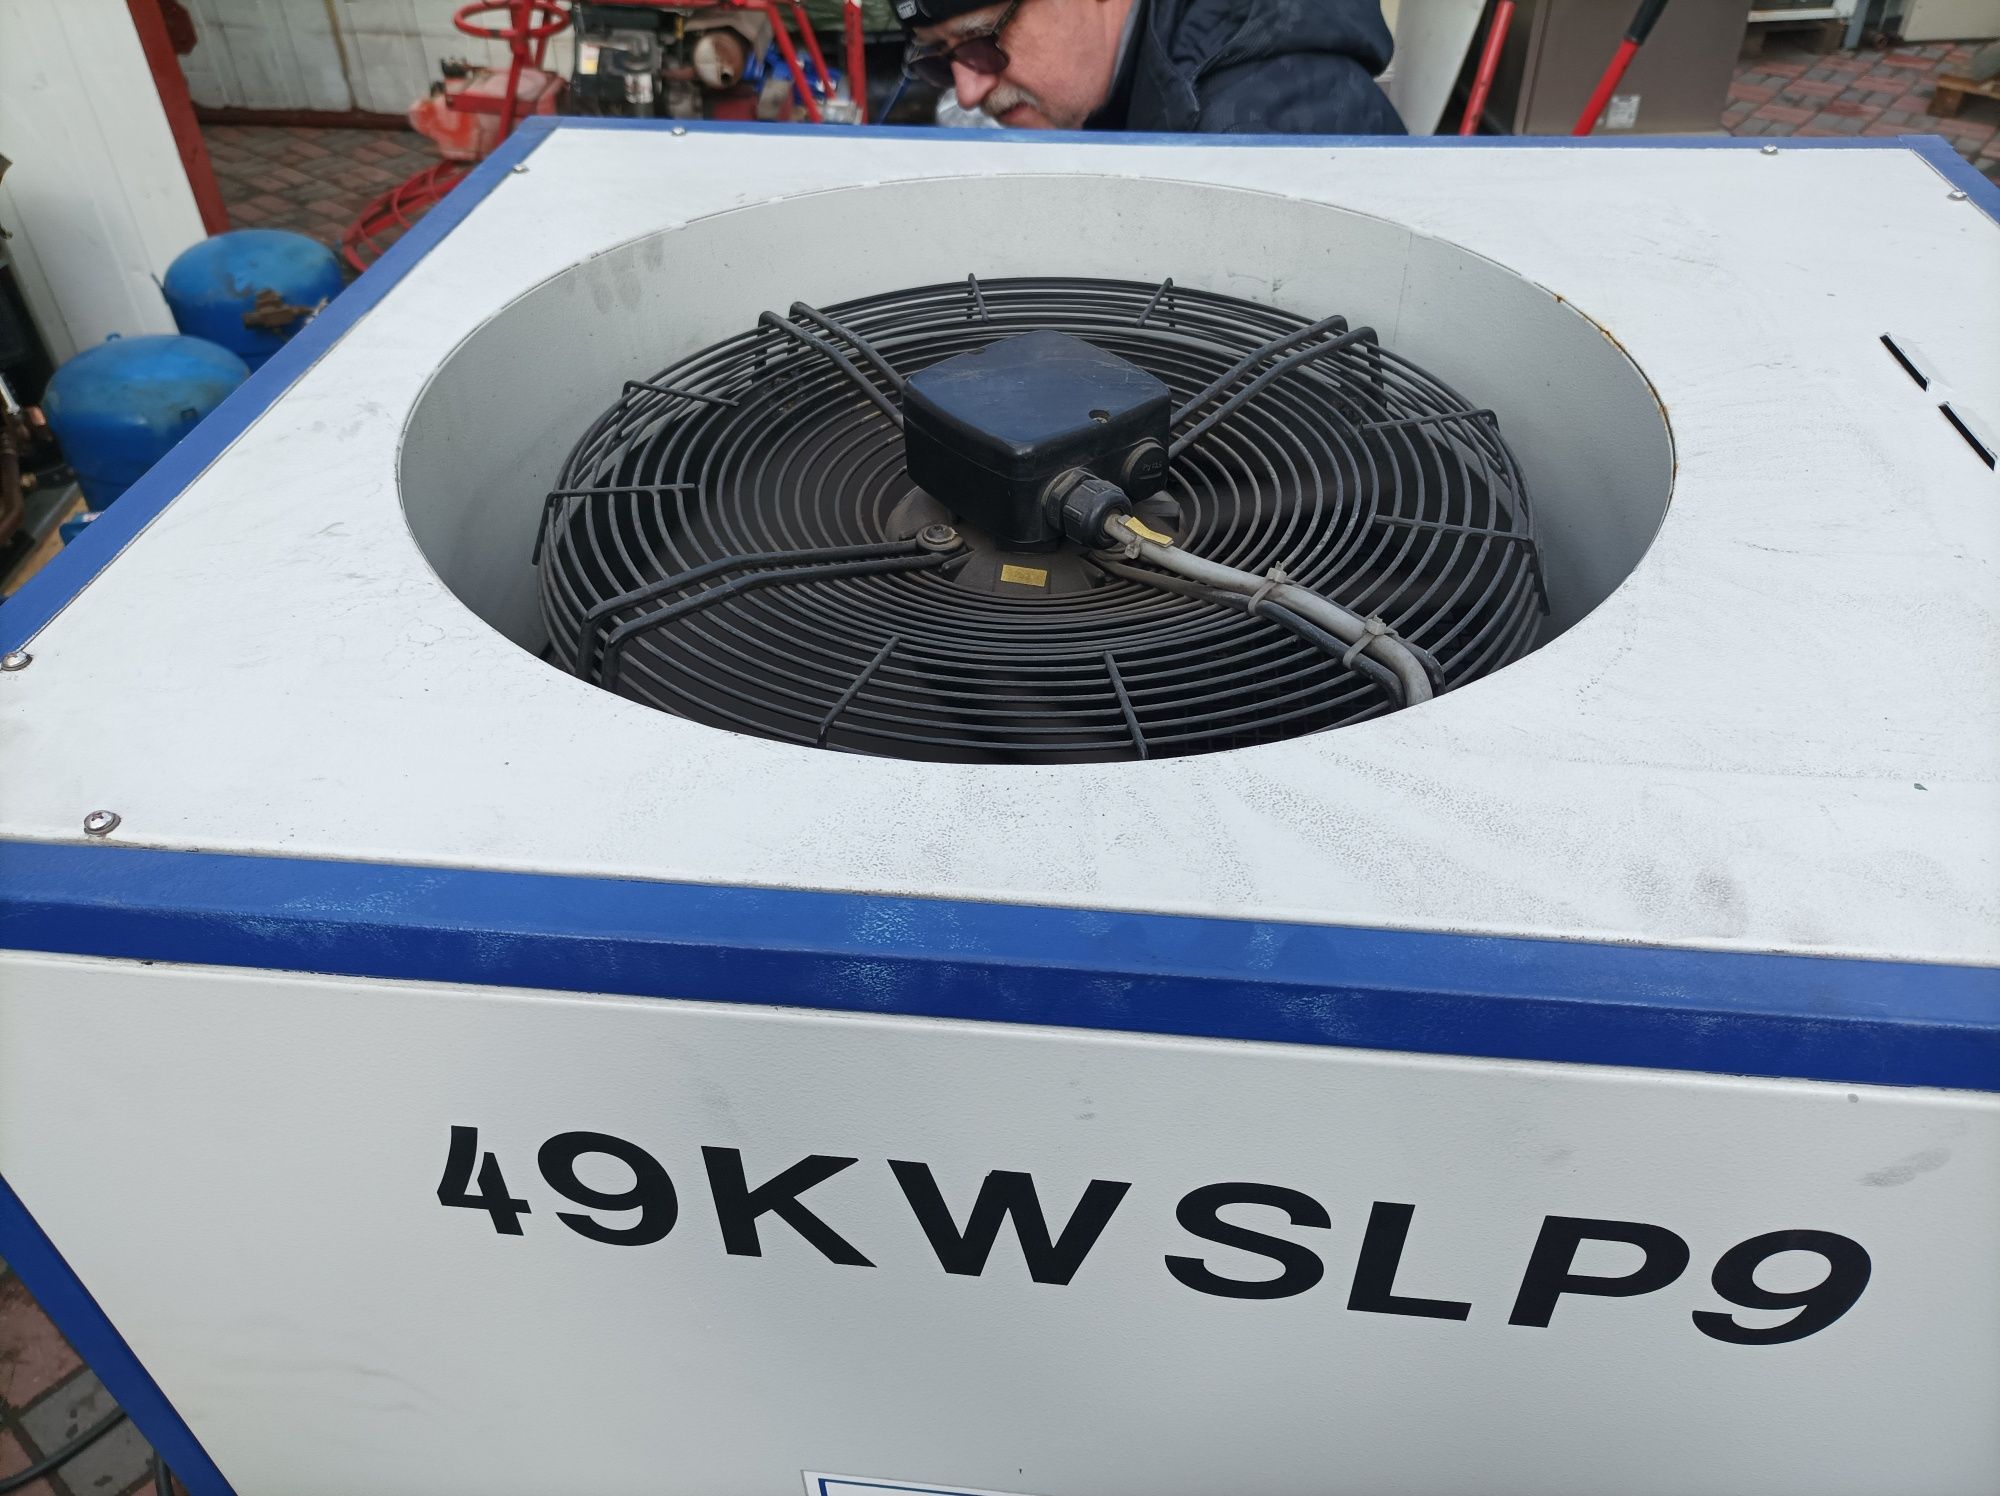 Wytwornica wody lodowej ONI 49 KW SLP9